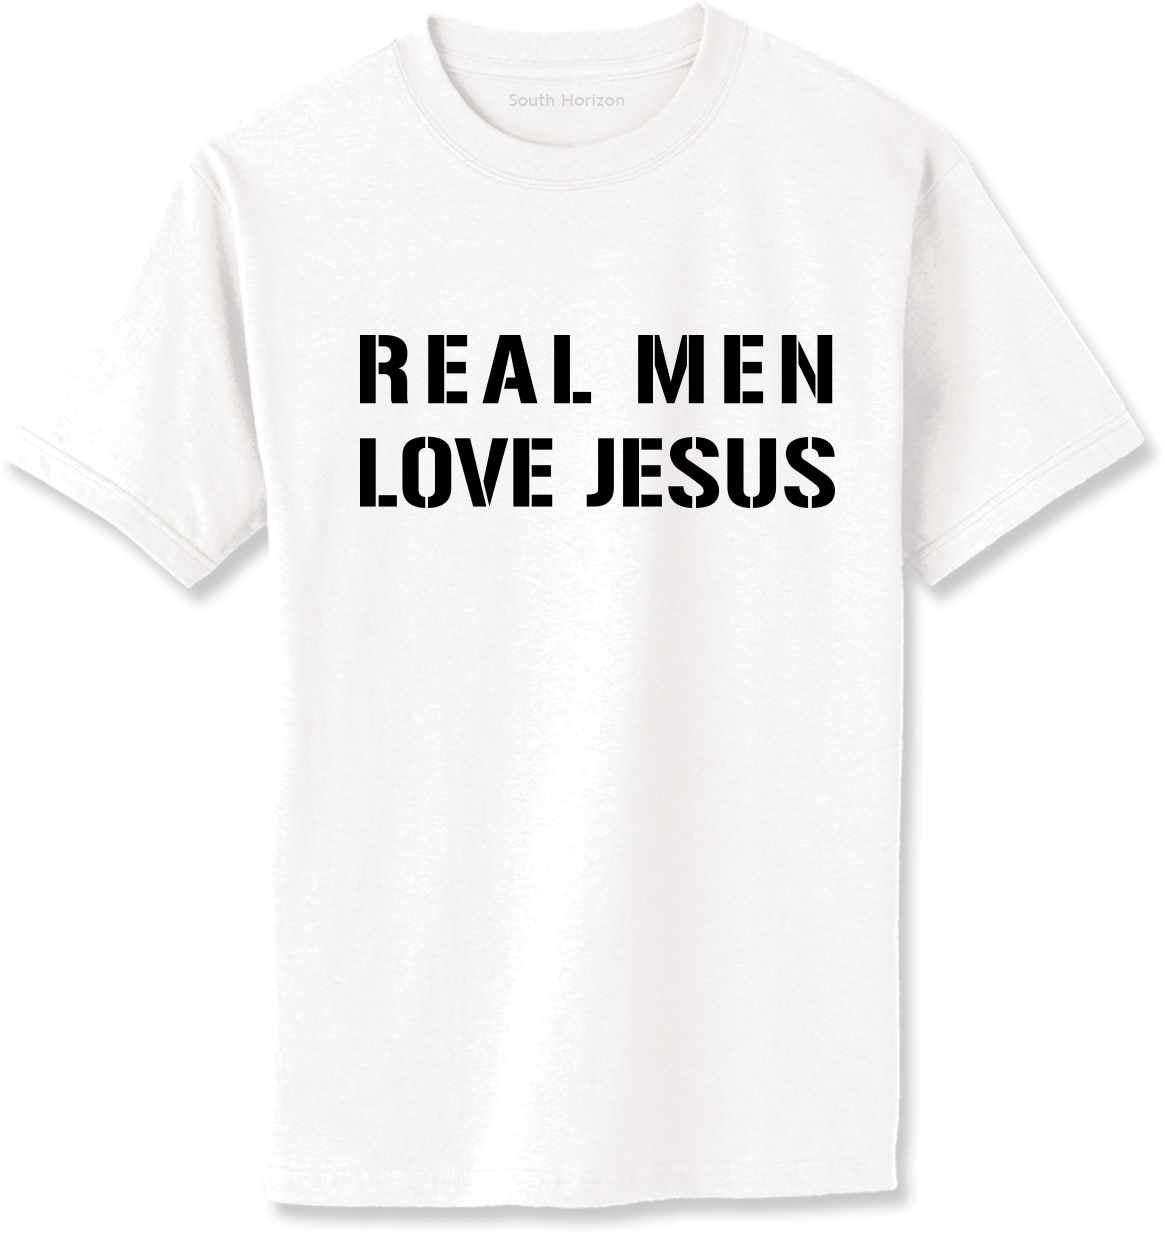 REAL MEN LOVE JESUS Adult T-Shirt (#393-1)